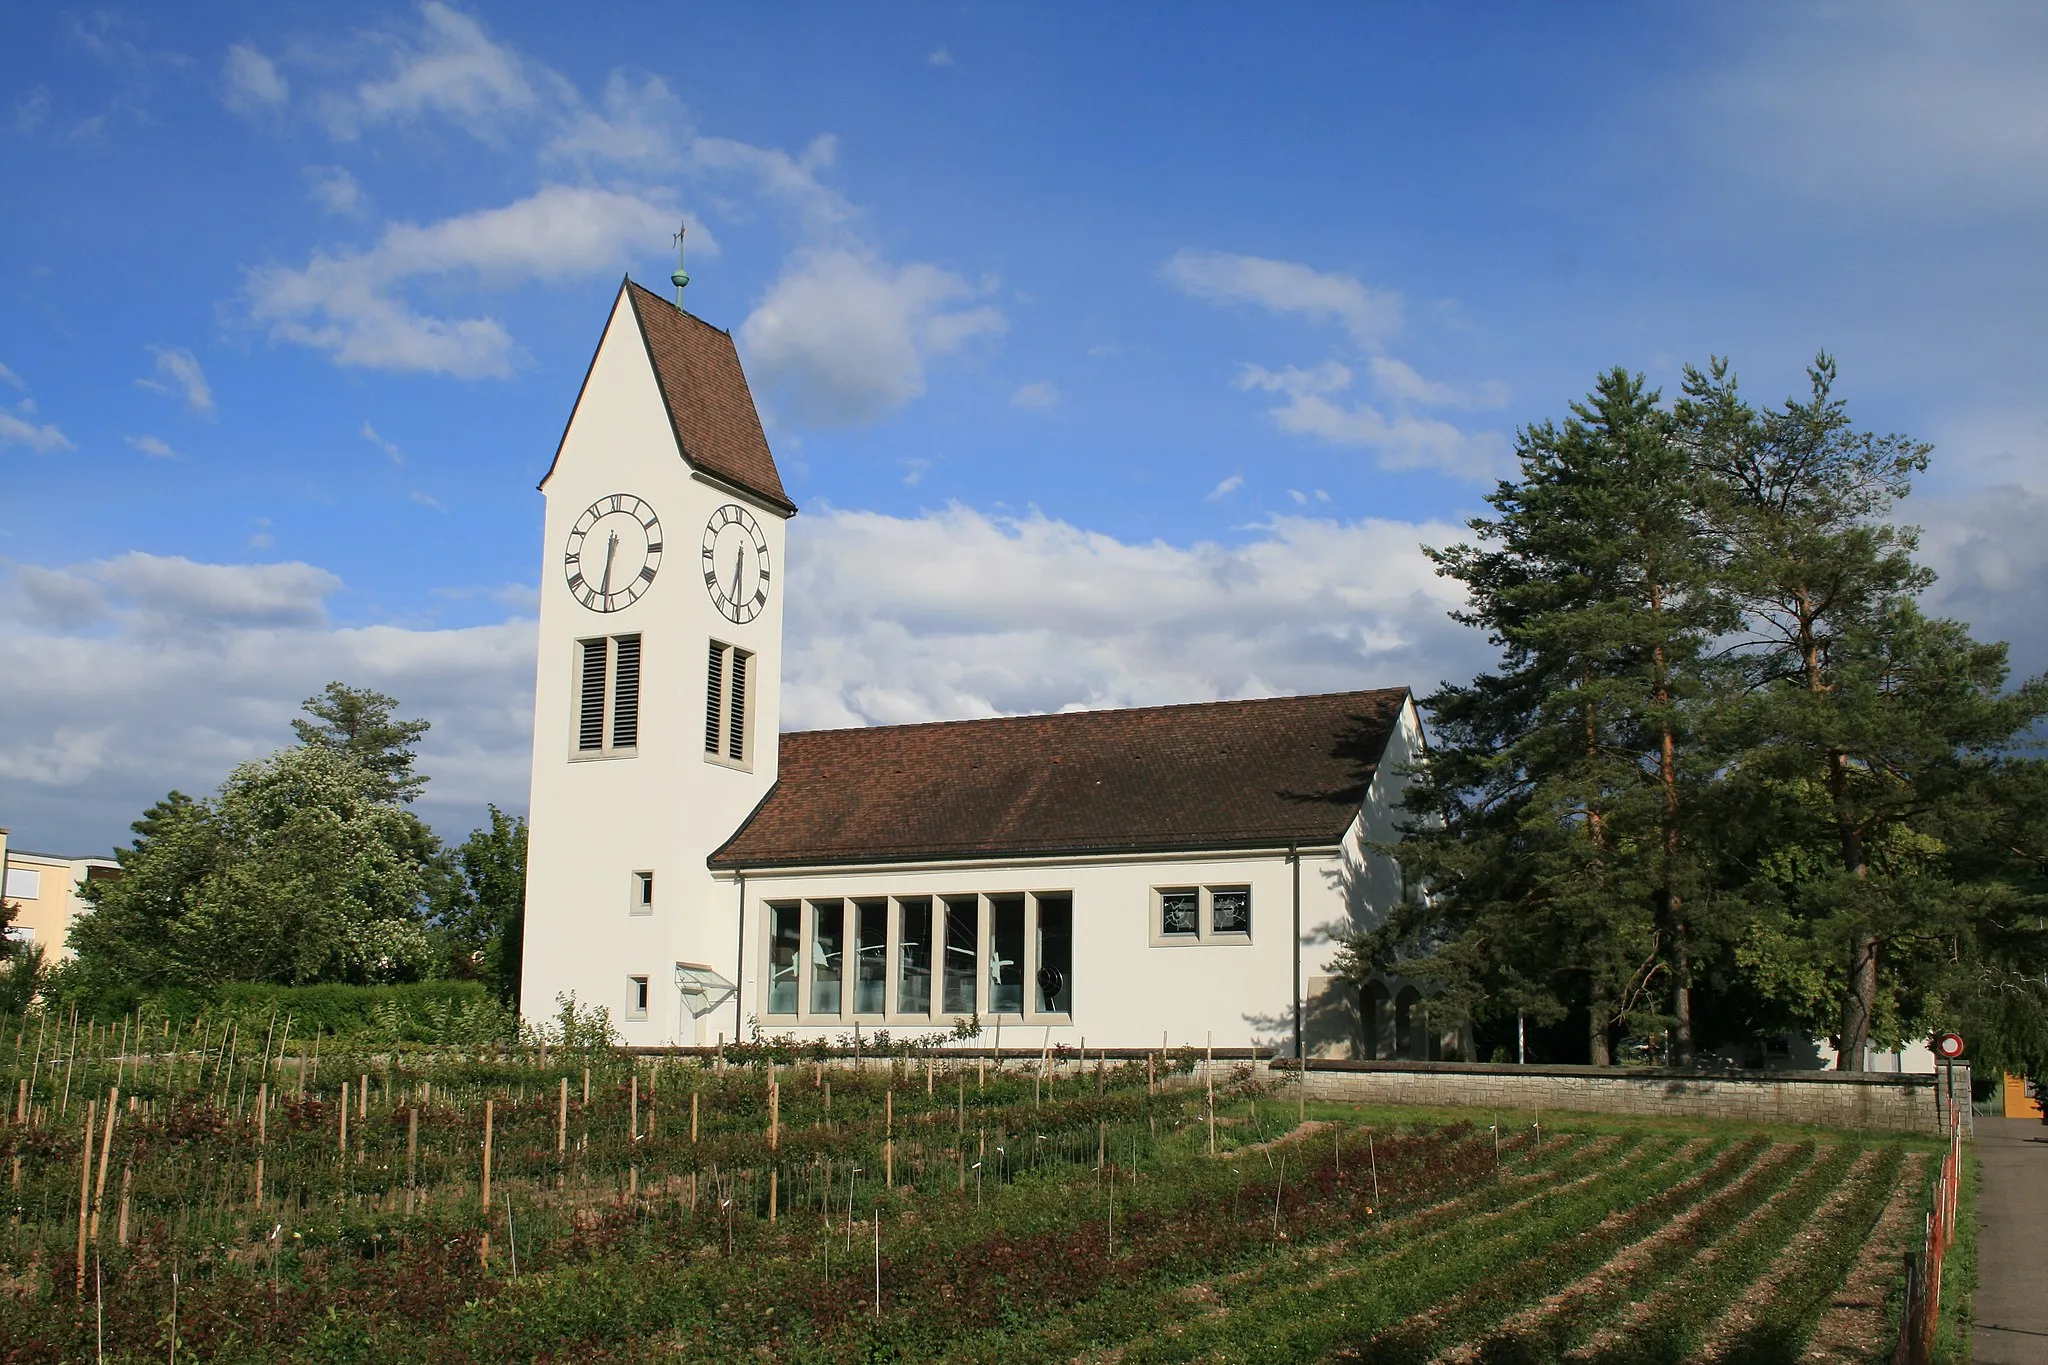 Photo showing: Ref. church of Wuerenlos, Switzerland